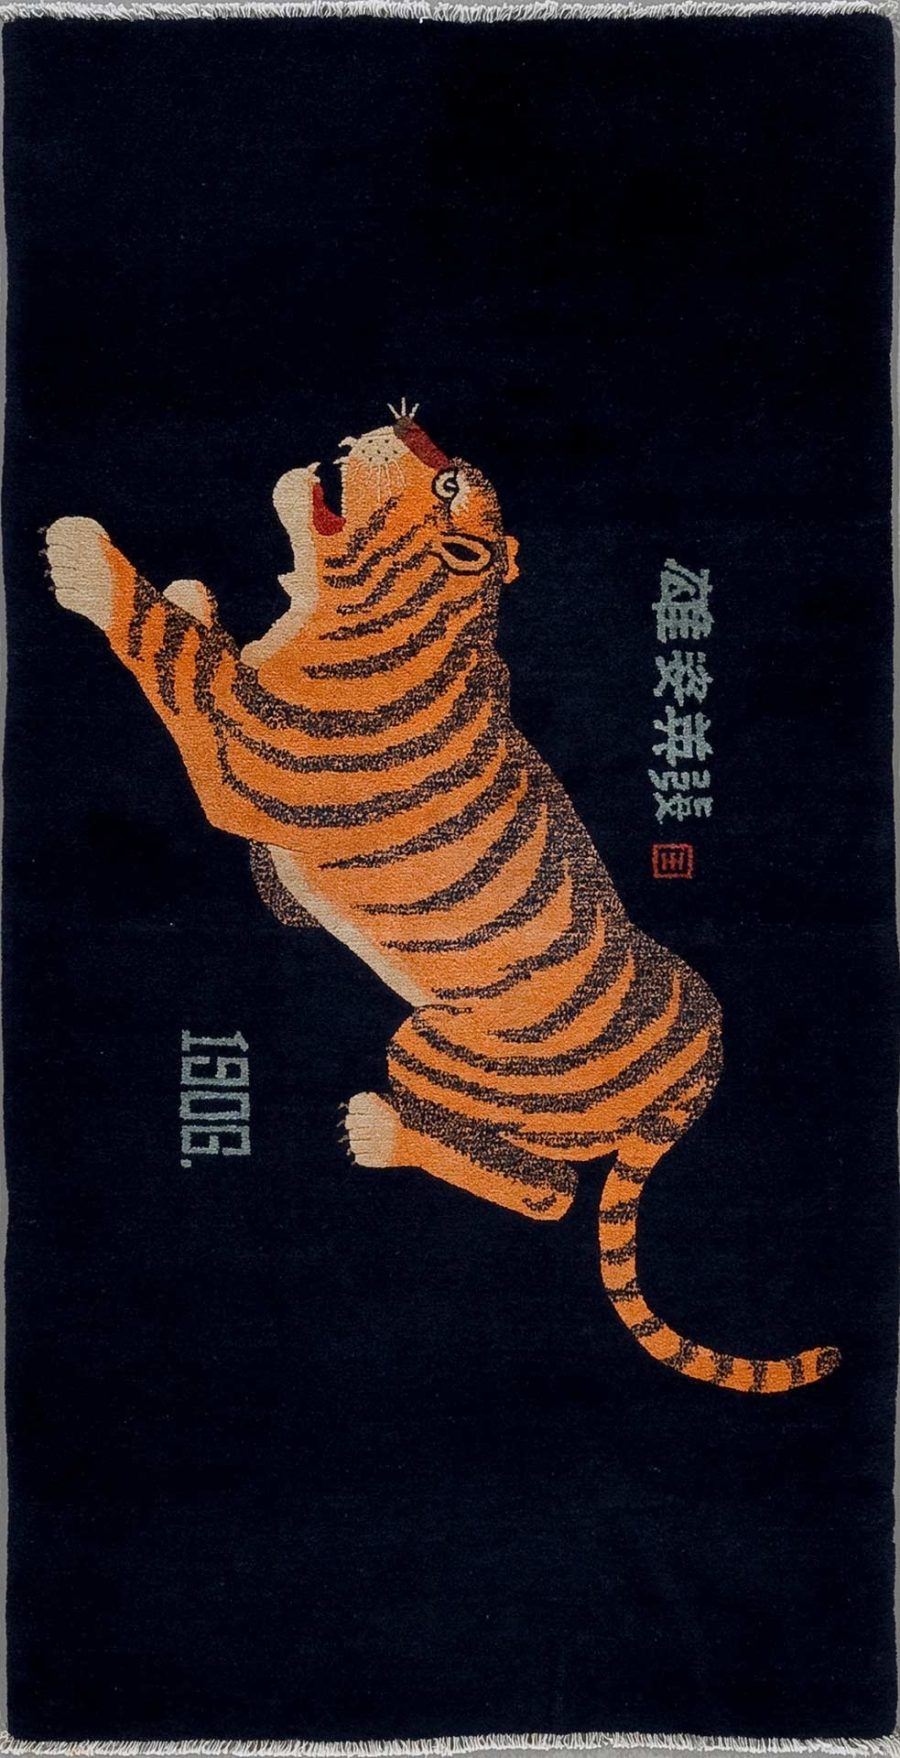 Antik wirkender Wandteppich mit einem springenden Tiger in Orange und Schwarz vor einem dunklen Hintergrund und asiatischen Schriftzeichen am rechten Rand.